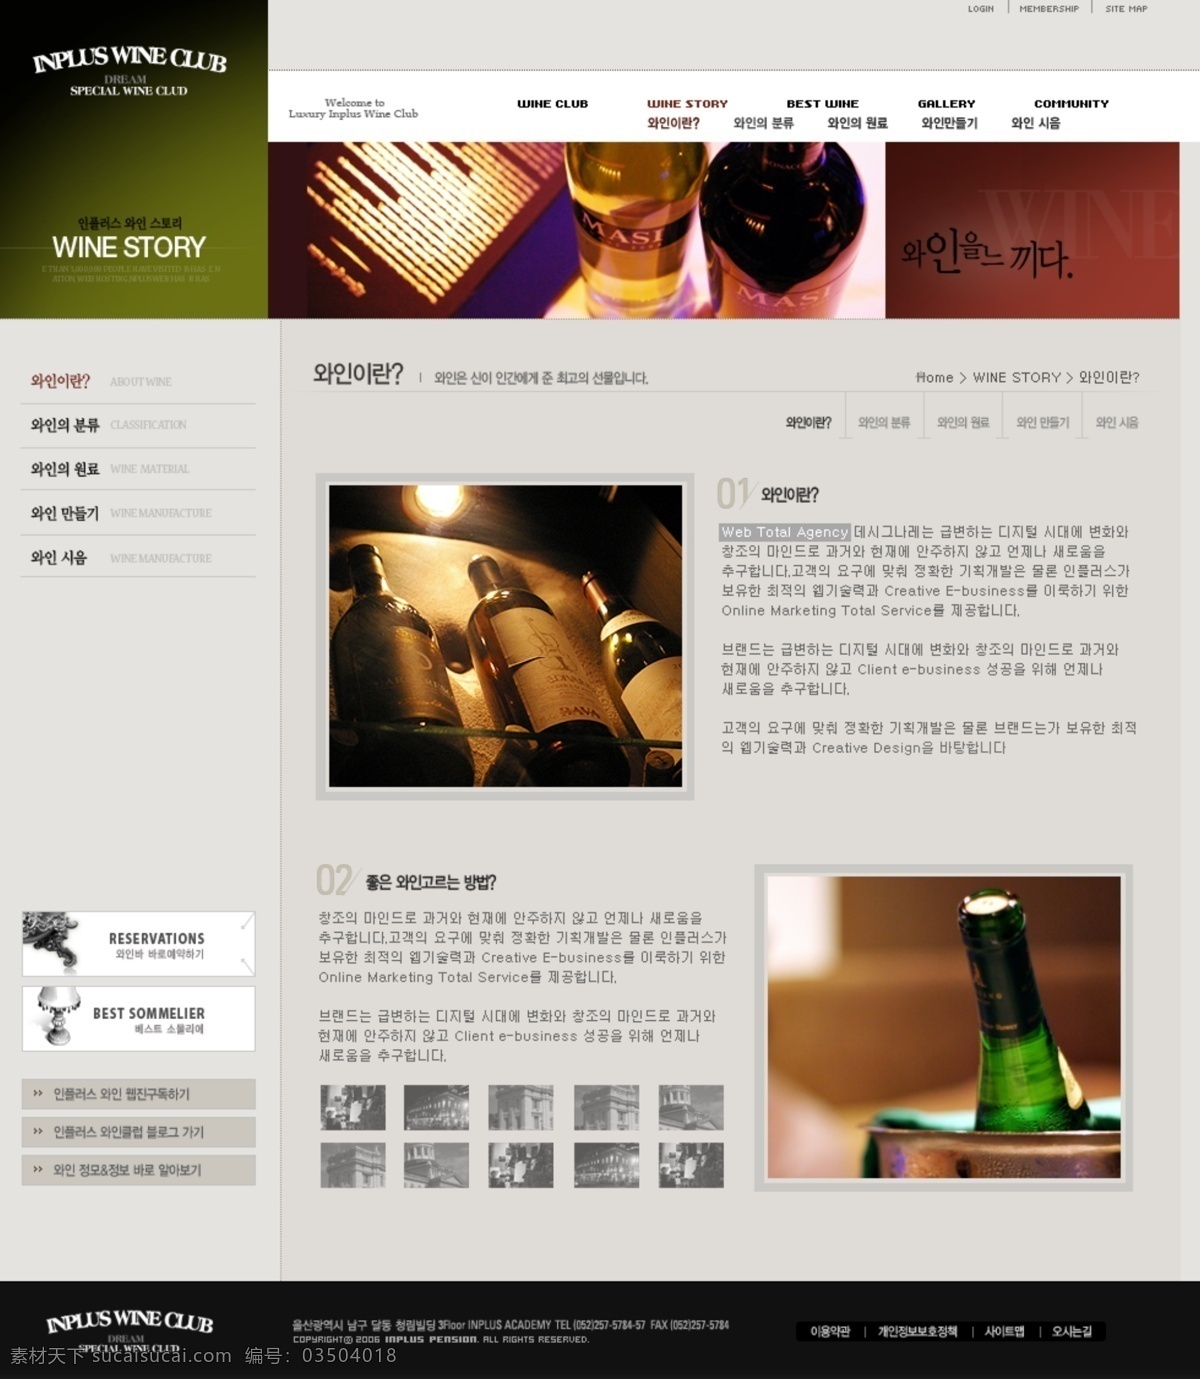 分层 ui设计 版式设计 韩国模板 红色 界面设计 酒吧 酒类 产品 主题 网页设计 源文件 网页模板 网页界面 网页版式 网页布局 酒品 韩文模板 web 网页素材 其他网页素材